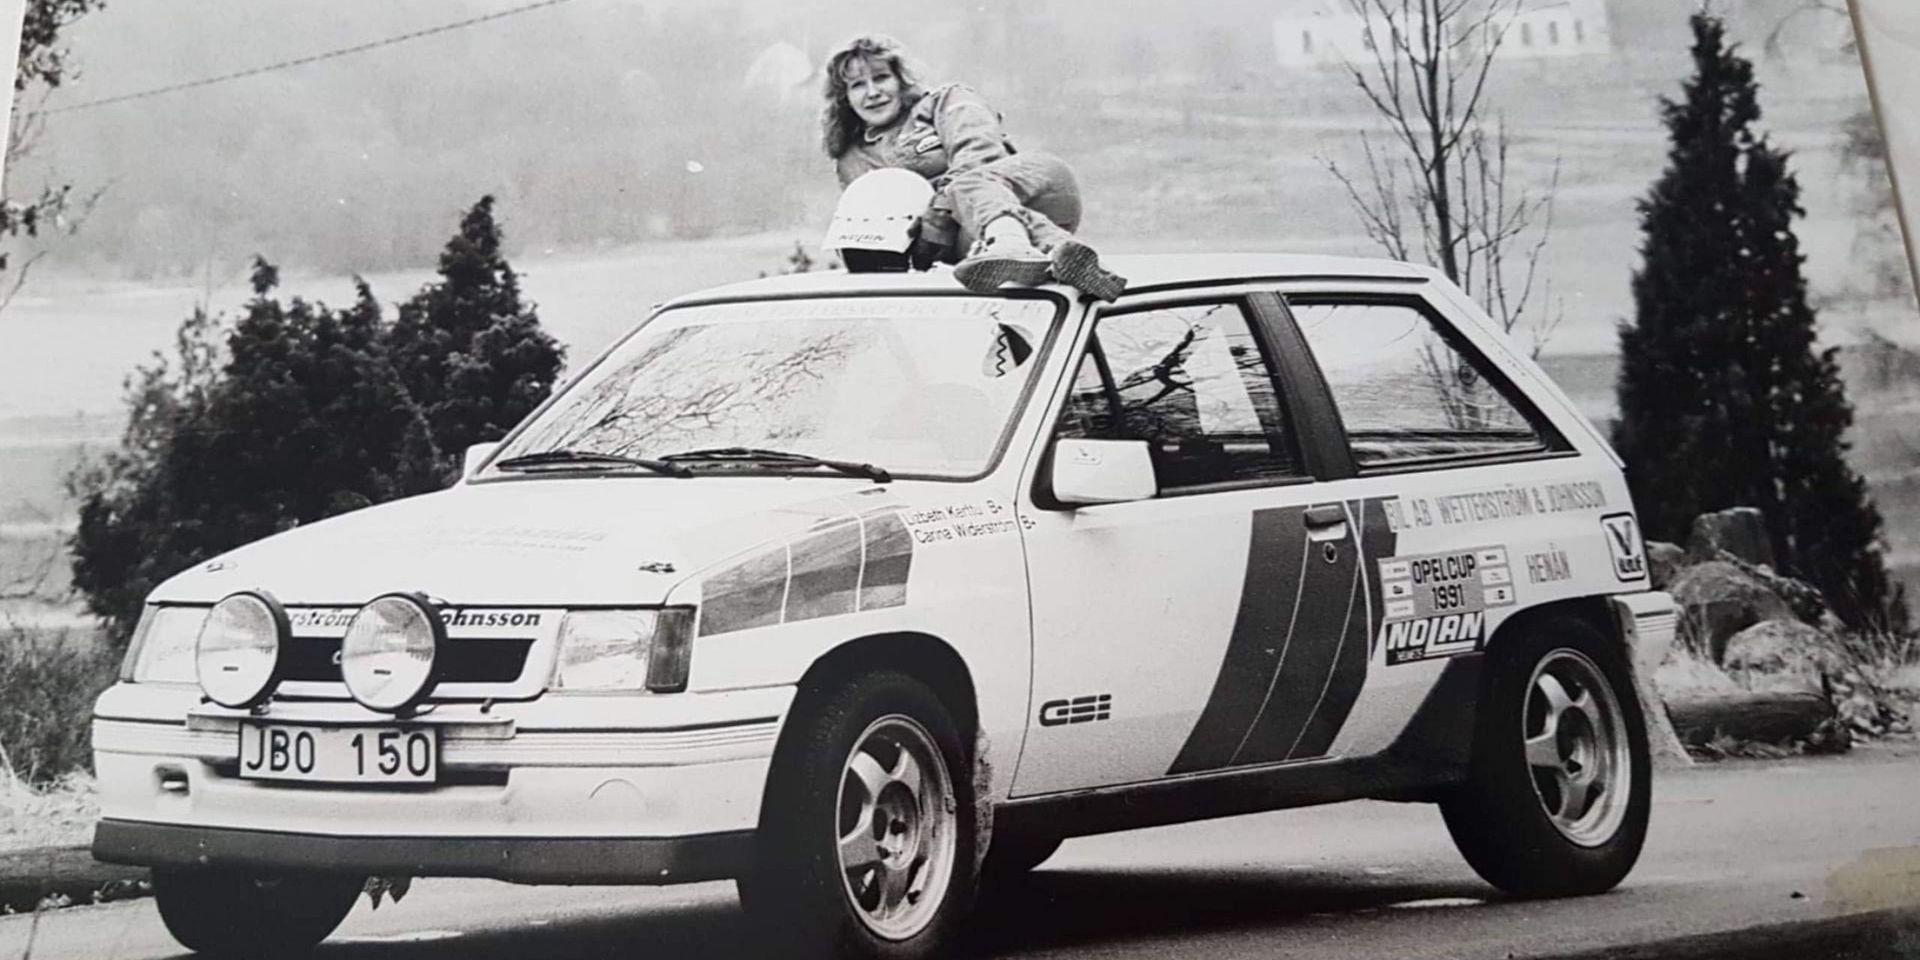 Lizbeth Kerttu Selins framgångsrika karriär i den mansdominerade rallysporten inleddes 1985.